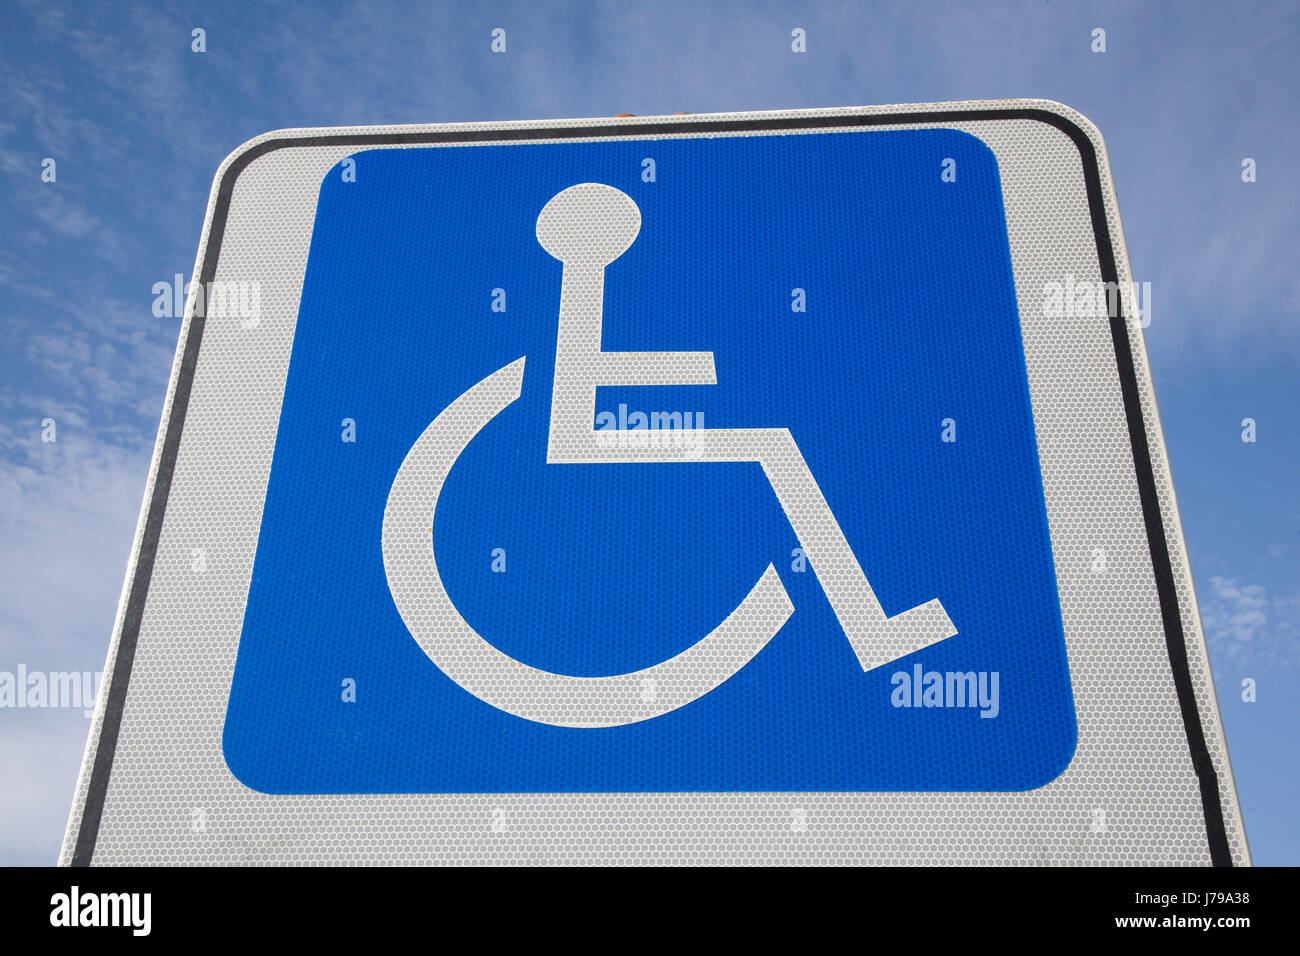 Droit de demander l'accès à la mobilité Mobilité civile le transport de voiture parking sign Banque D'Images